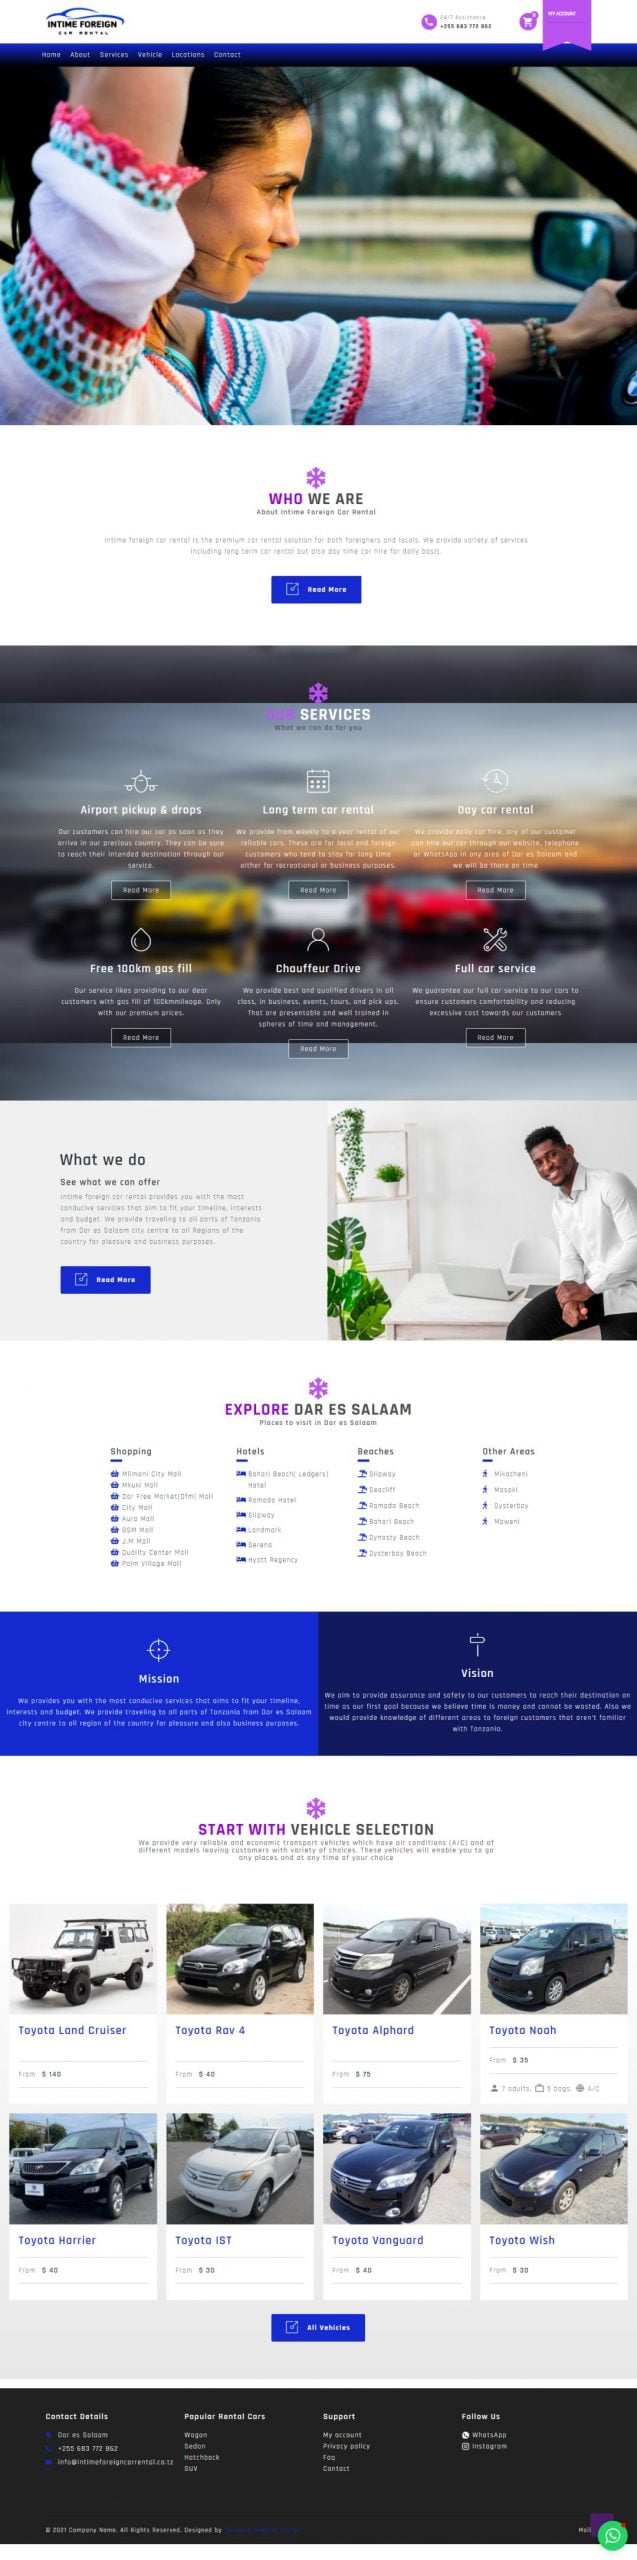 Web design Tanzania